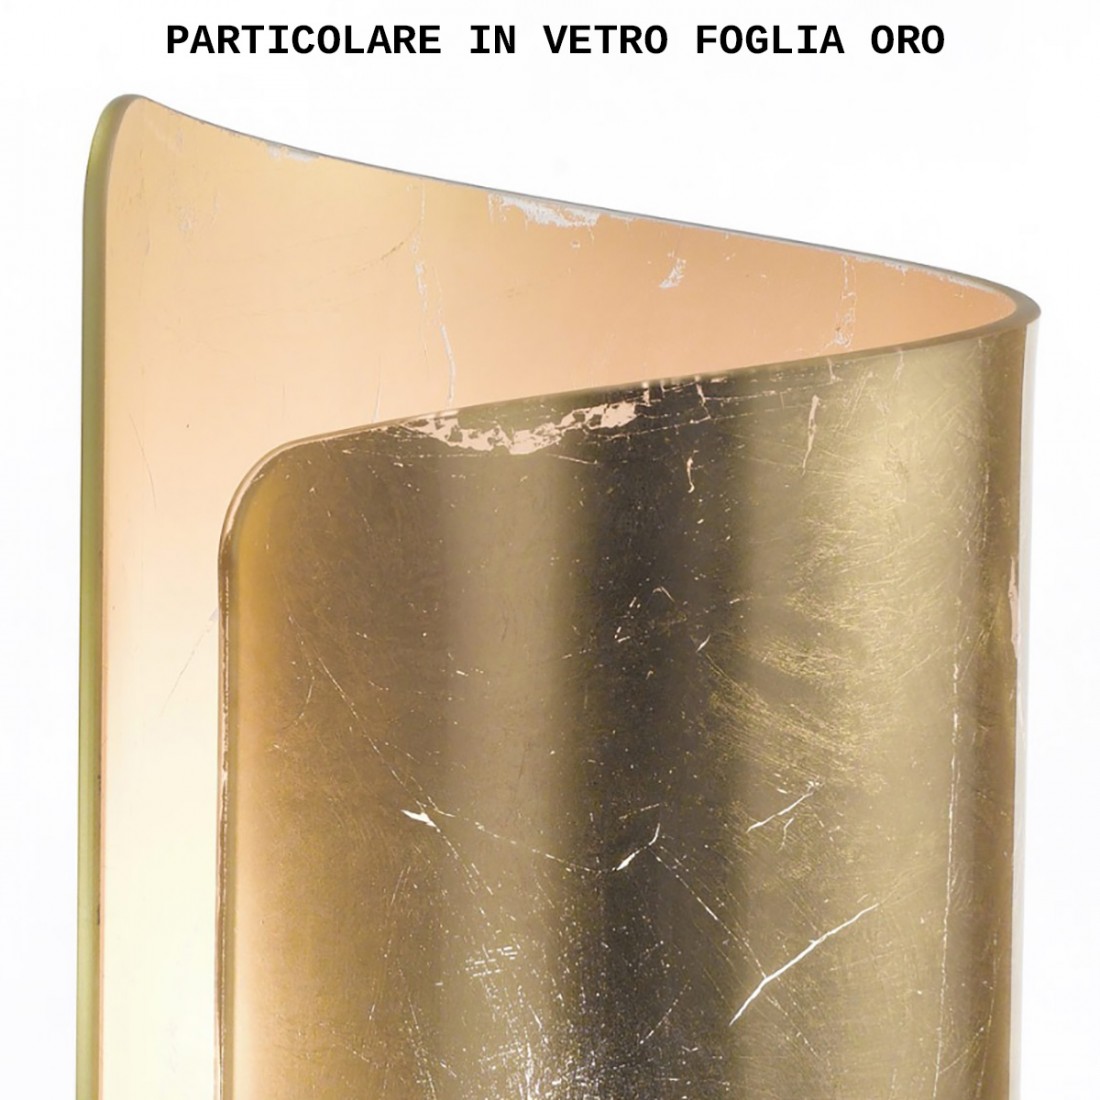 Plafonnier avec feuilles de verre grain E14, Made in Italy.